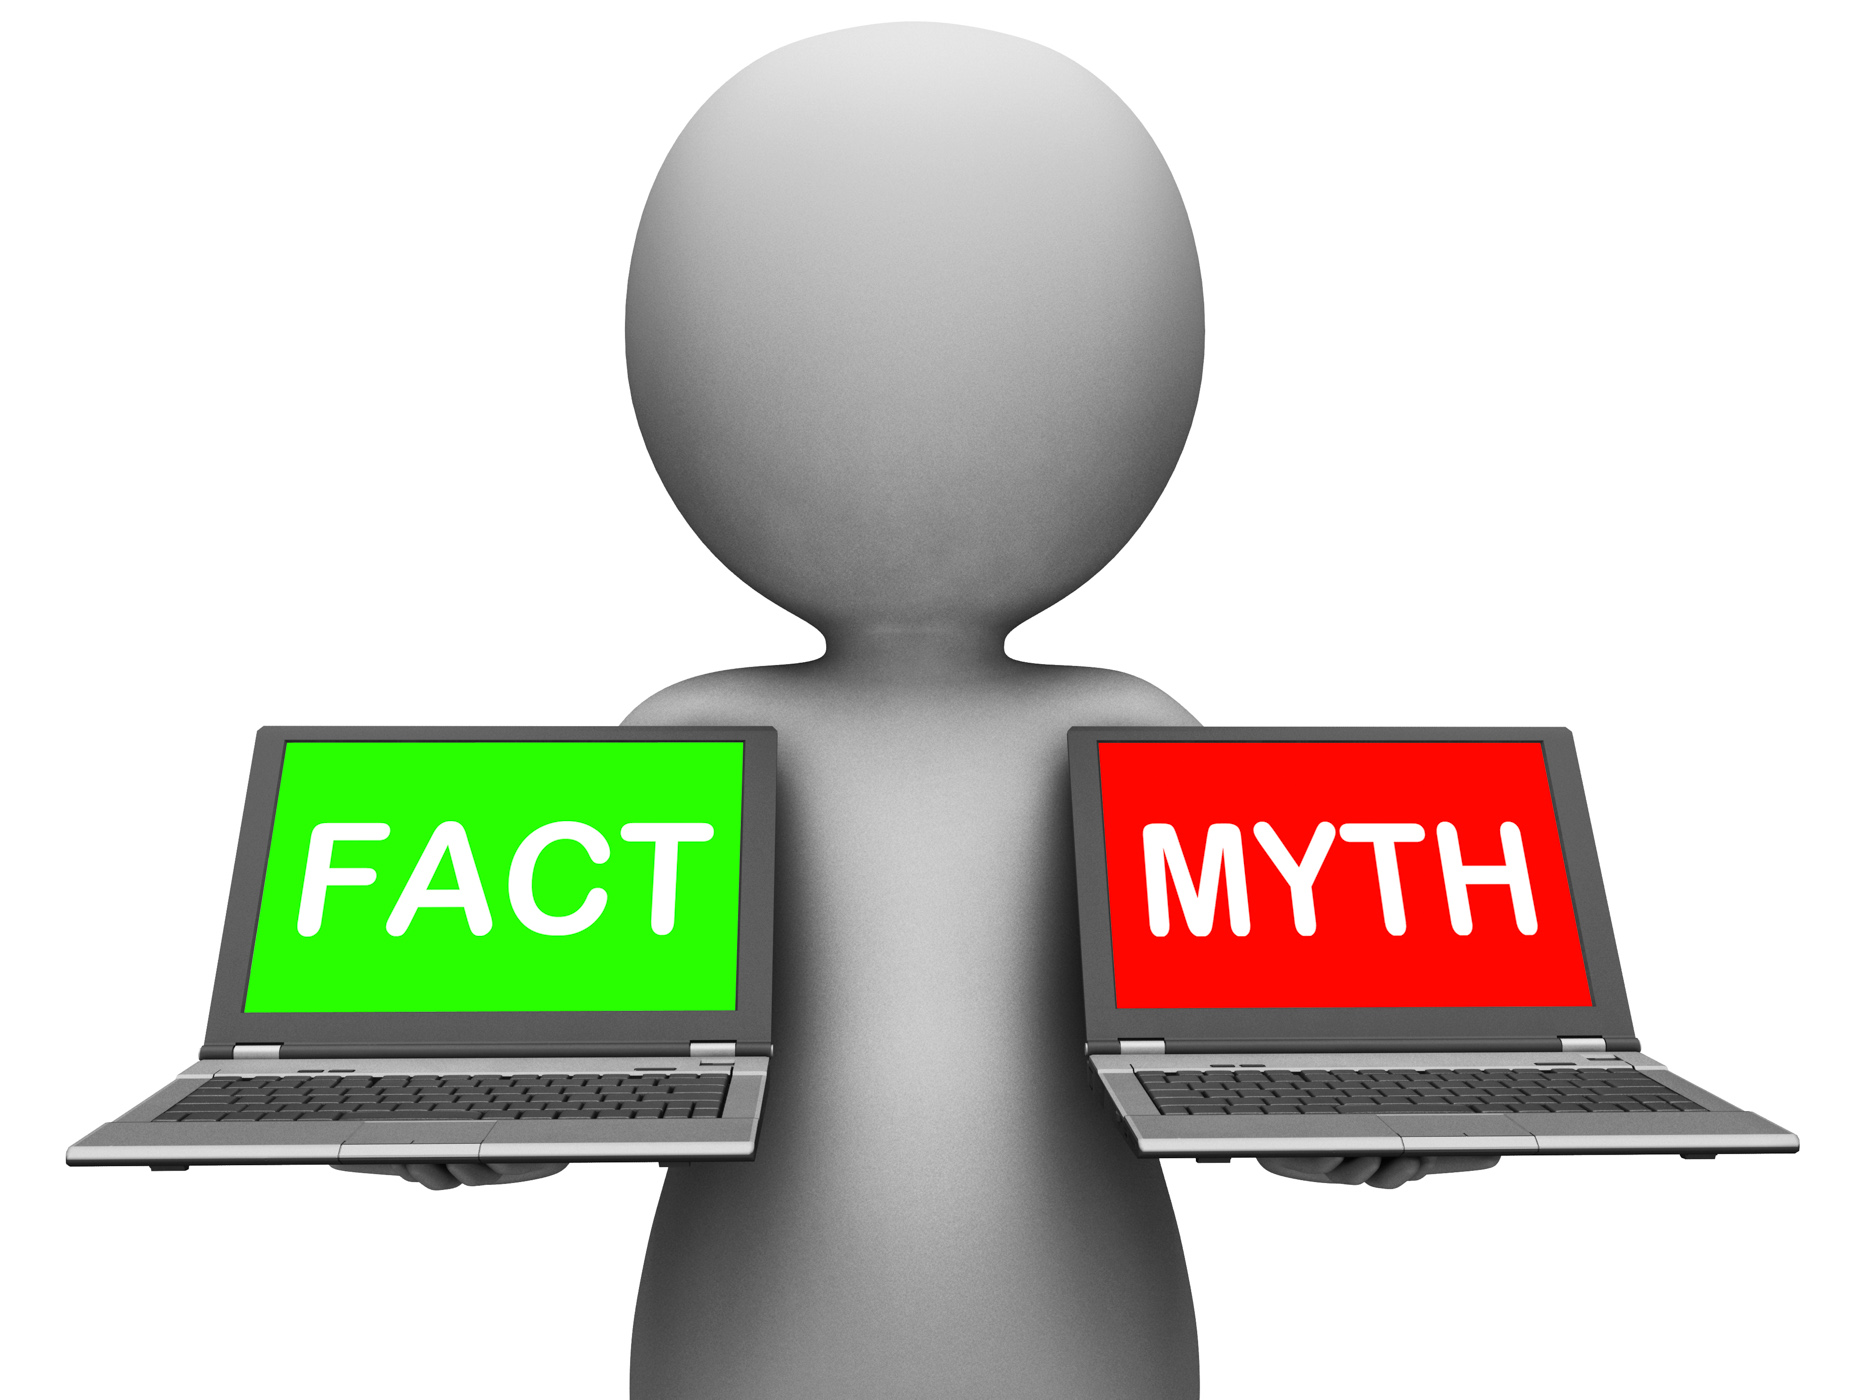 Fact myth laptops show facts or mythology photo